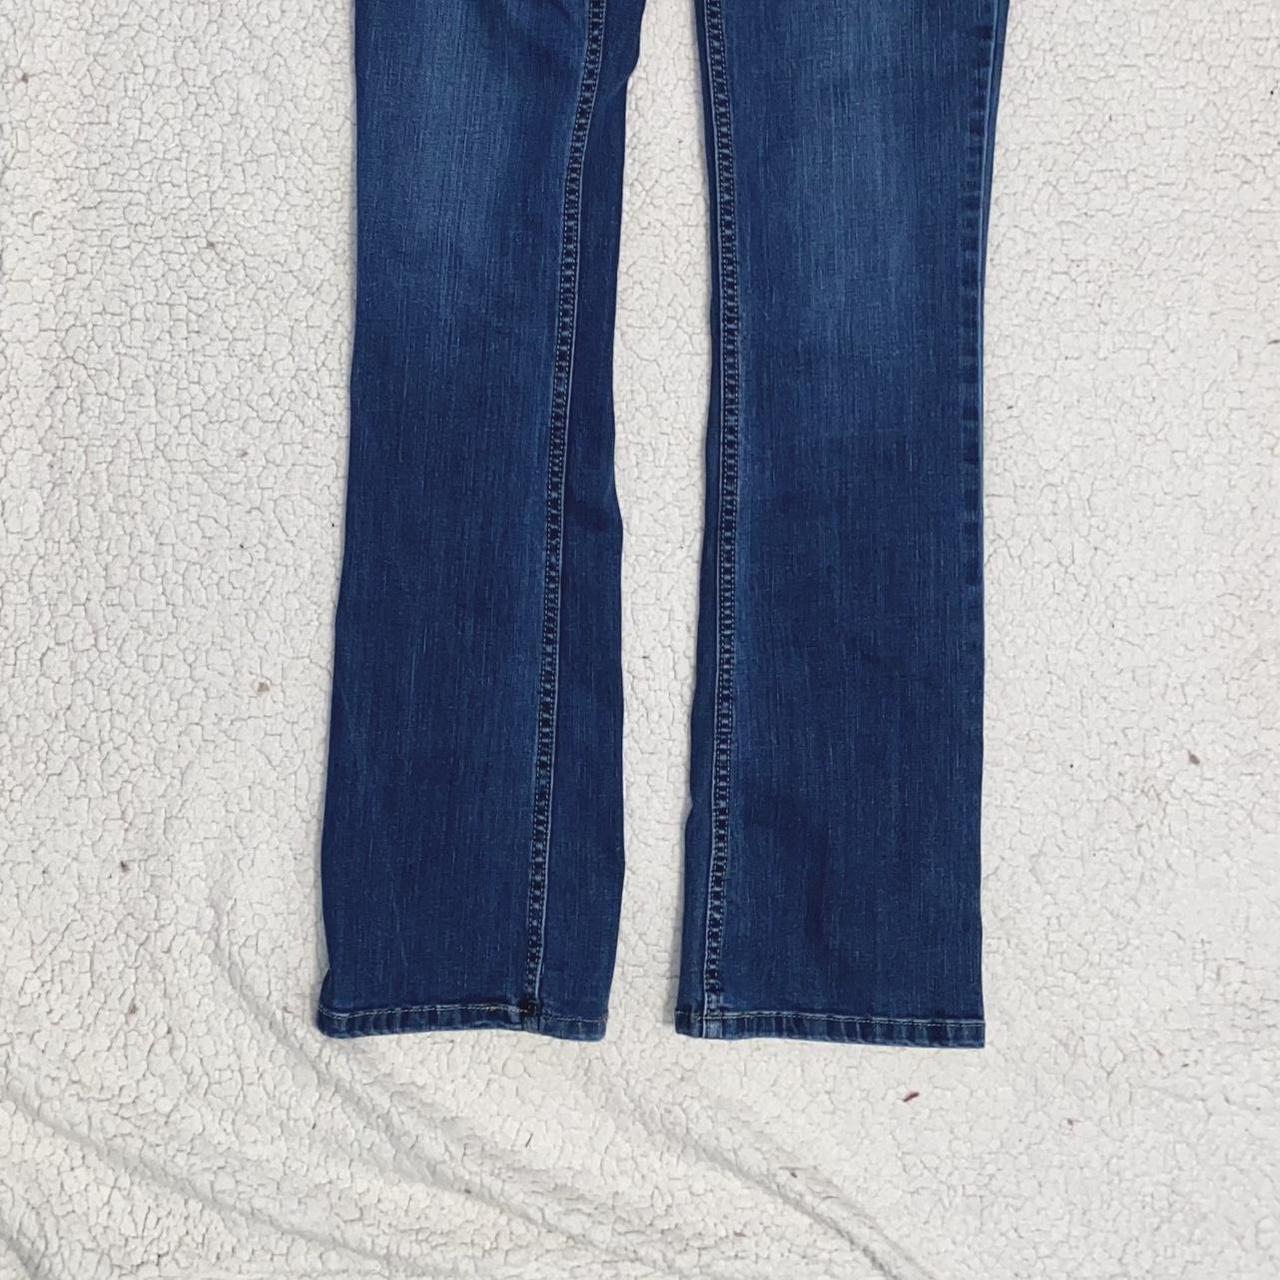 carhartt slim fit boot cut jeans 👖 -size 2 Tall -no... - Depop